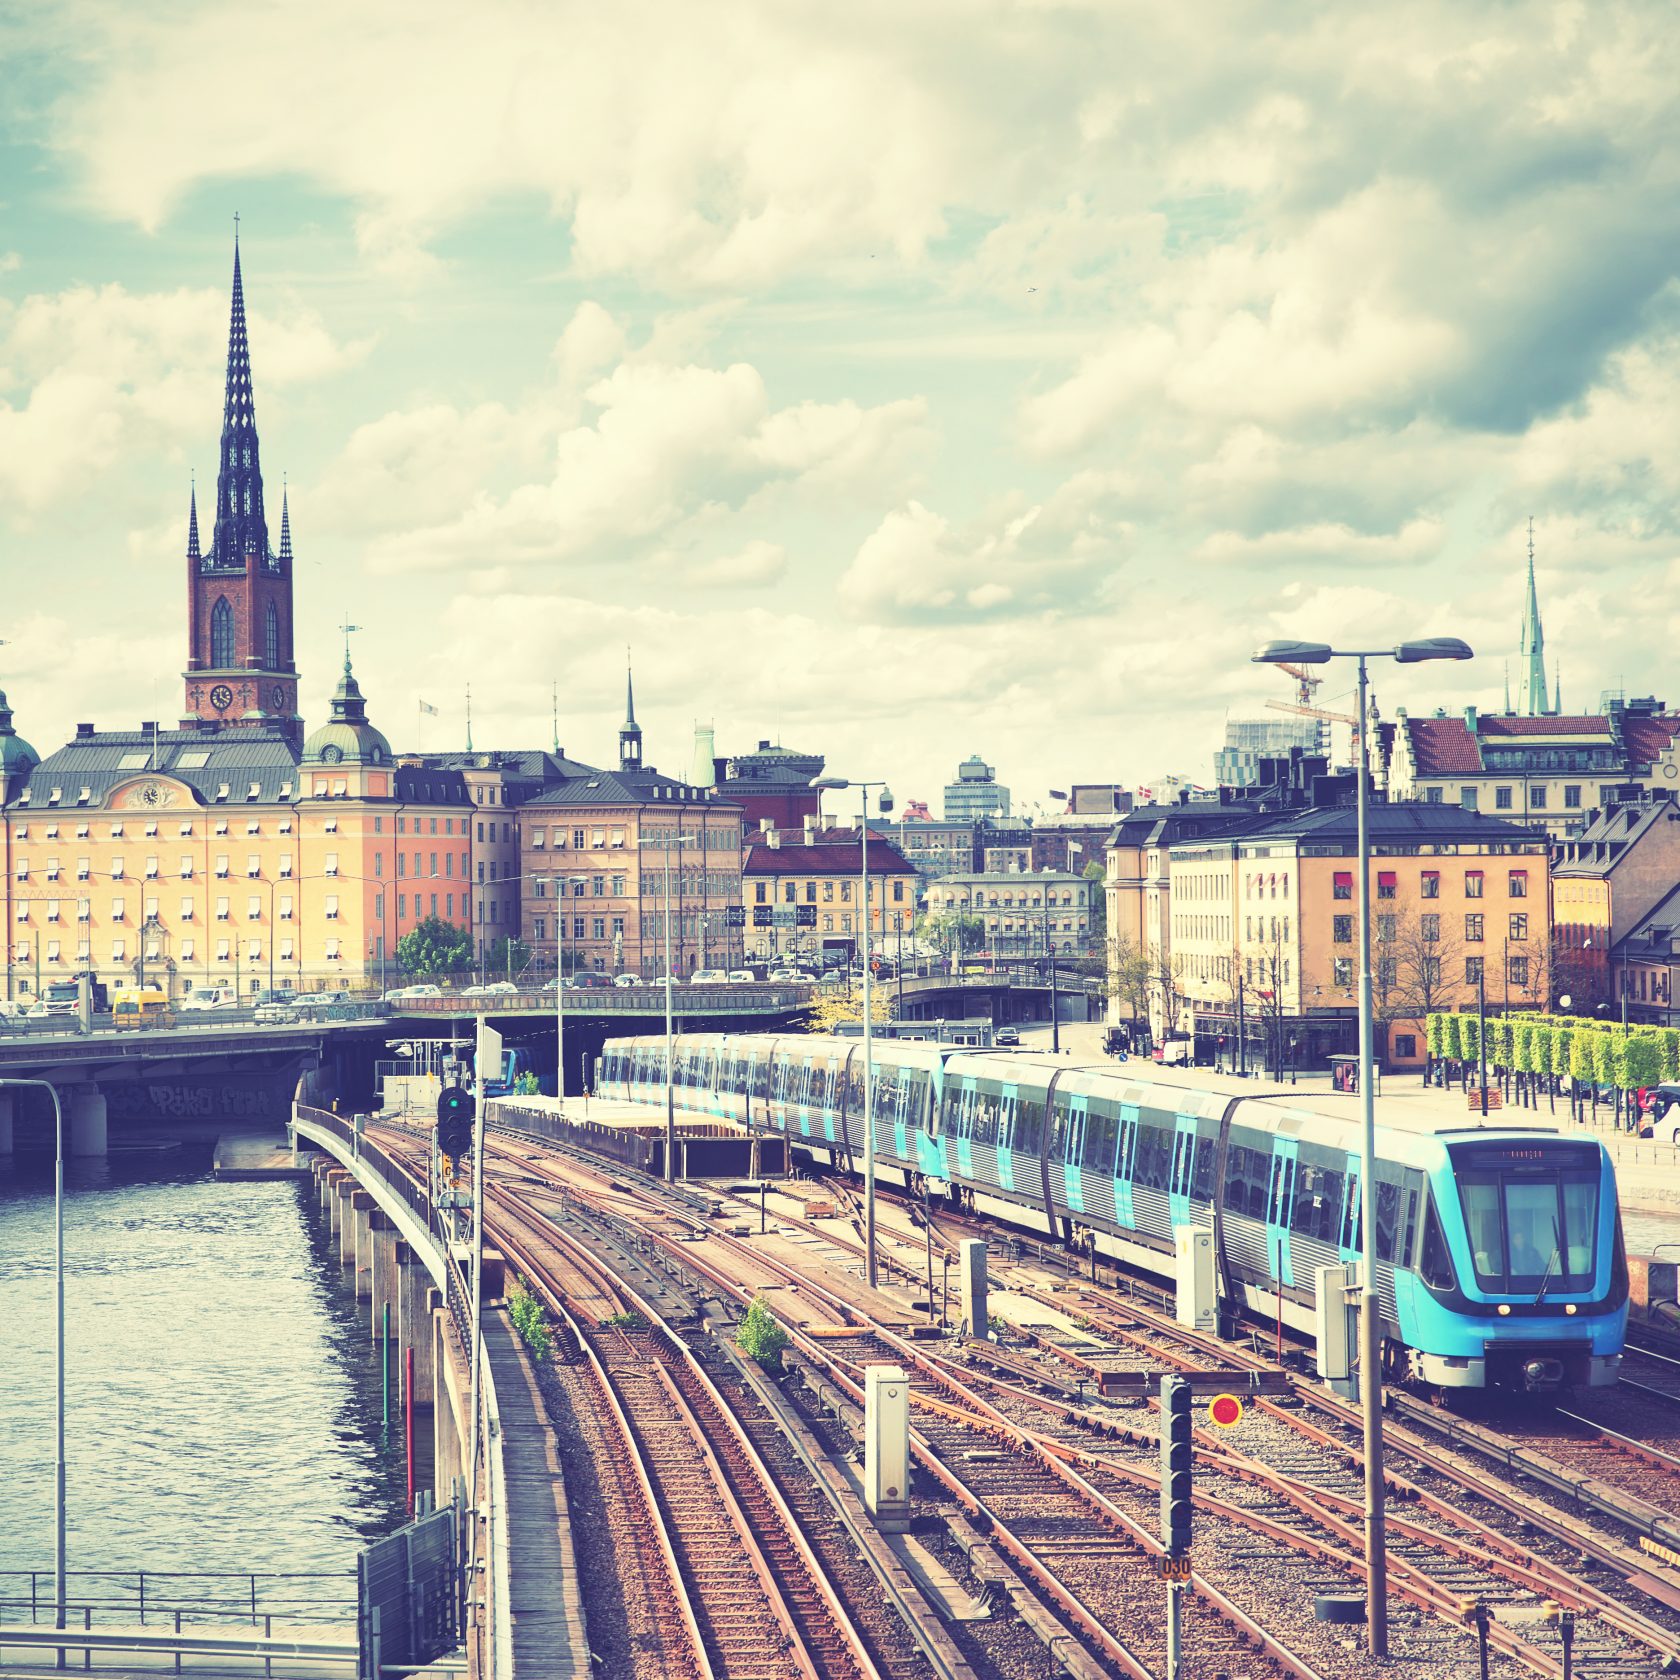 Stockholm central